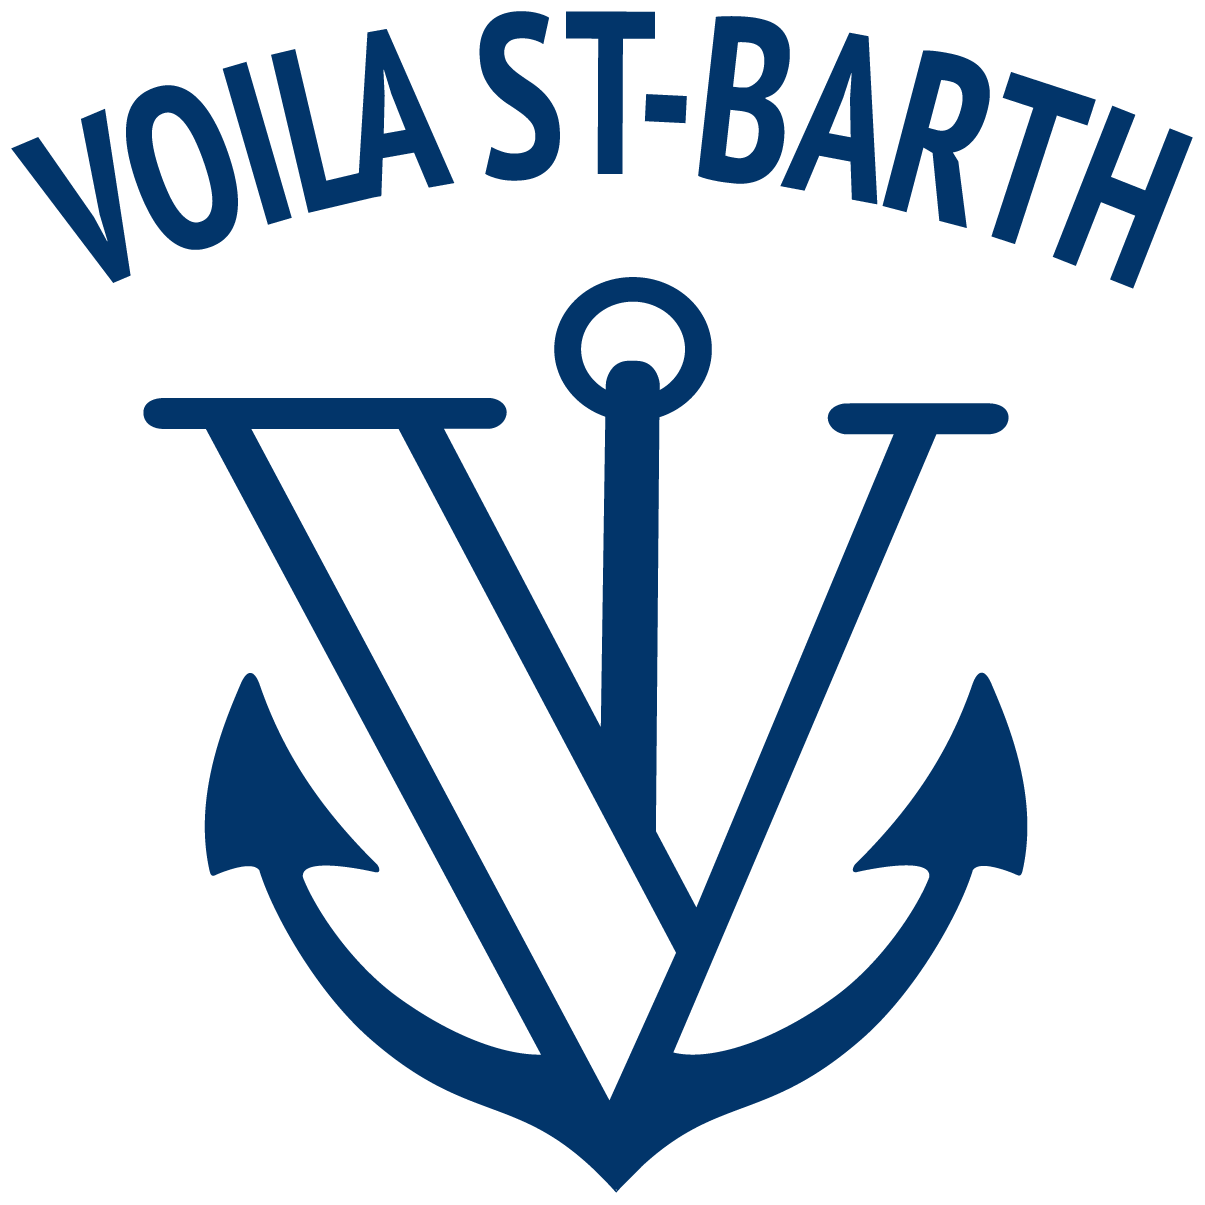 Voila St Barth